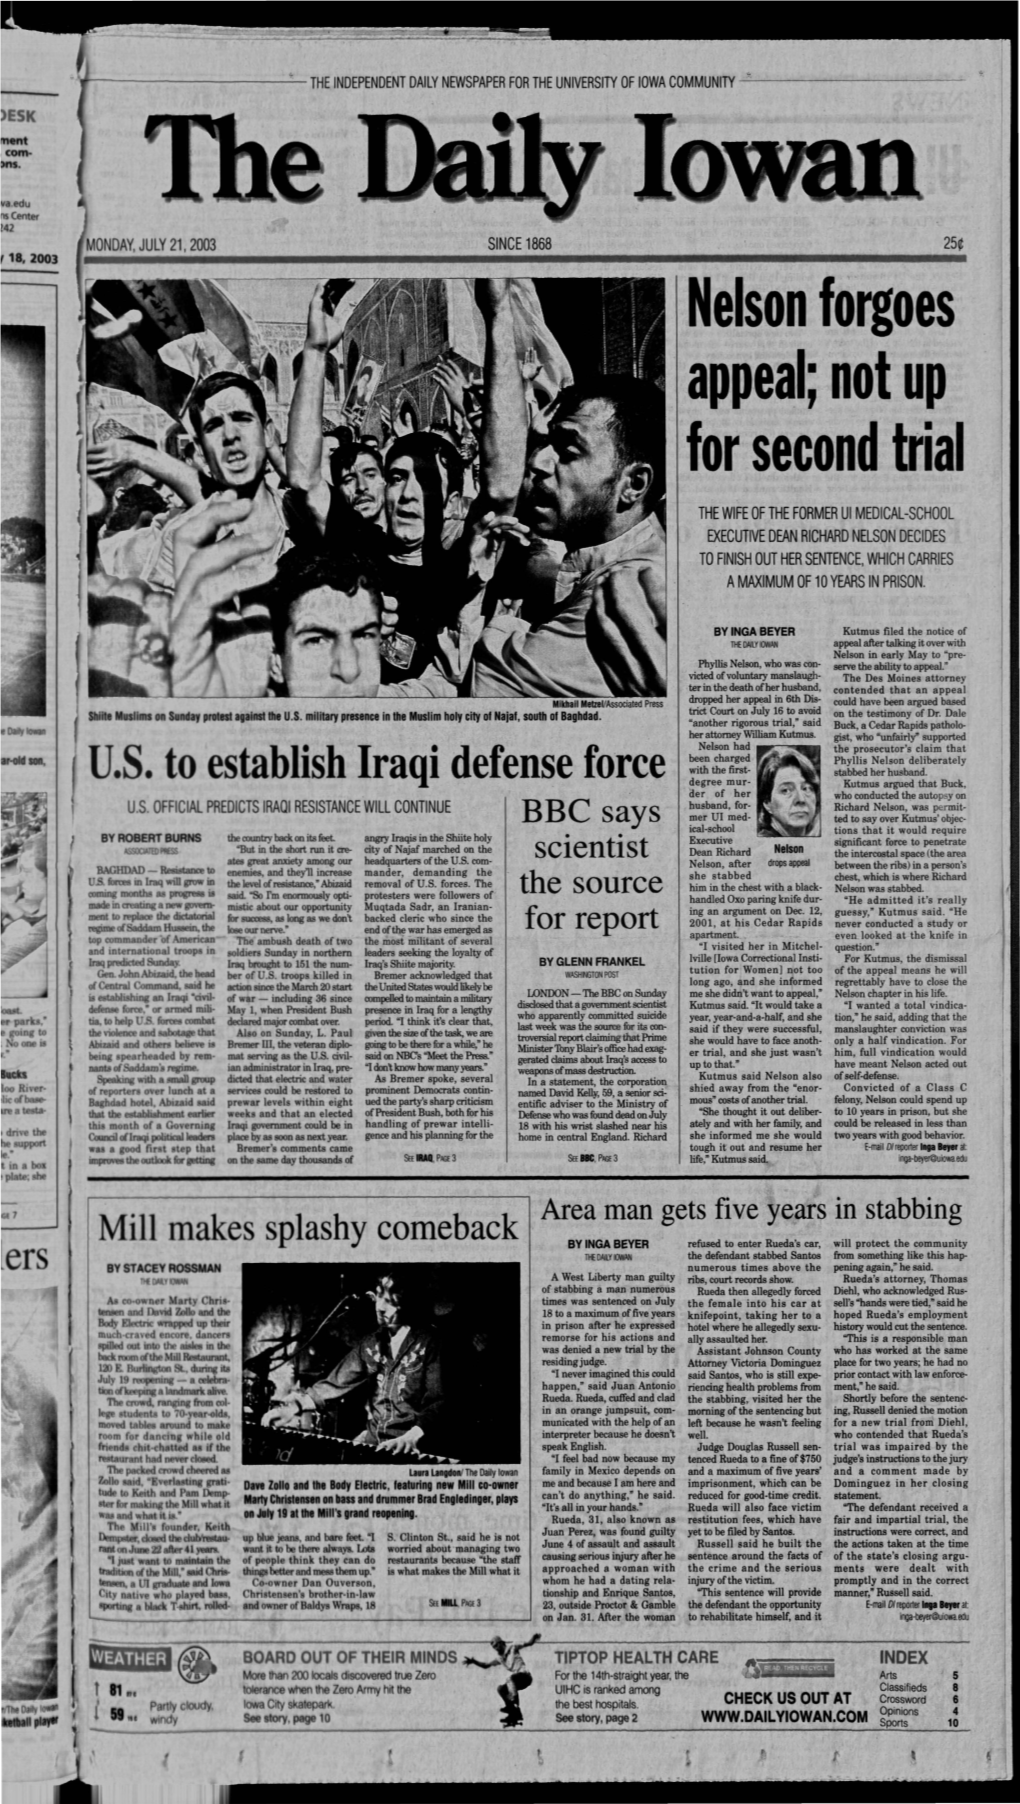 Daily Iowan (Iowa City, Iowa), 2003-07-21